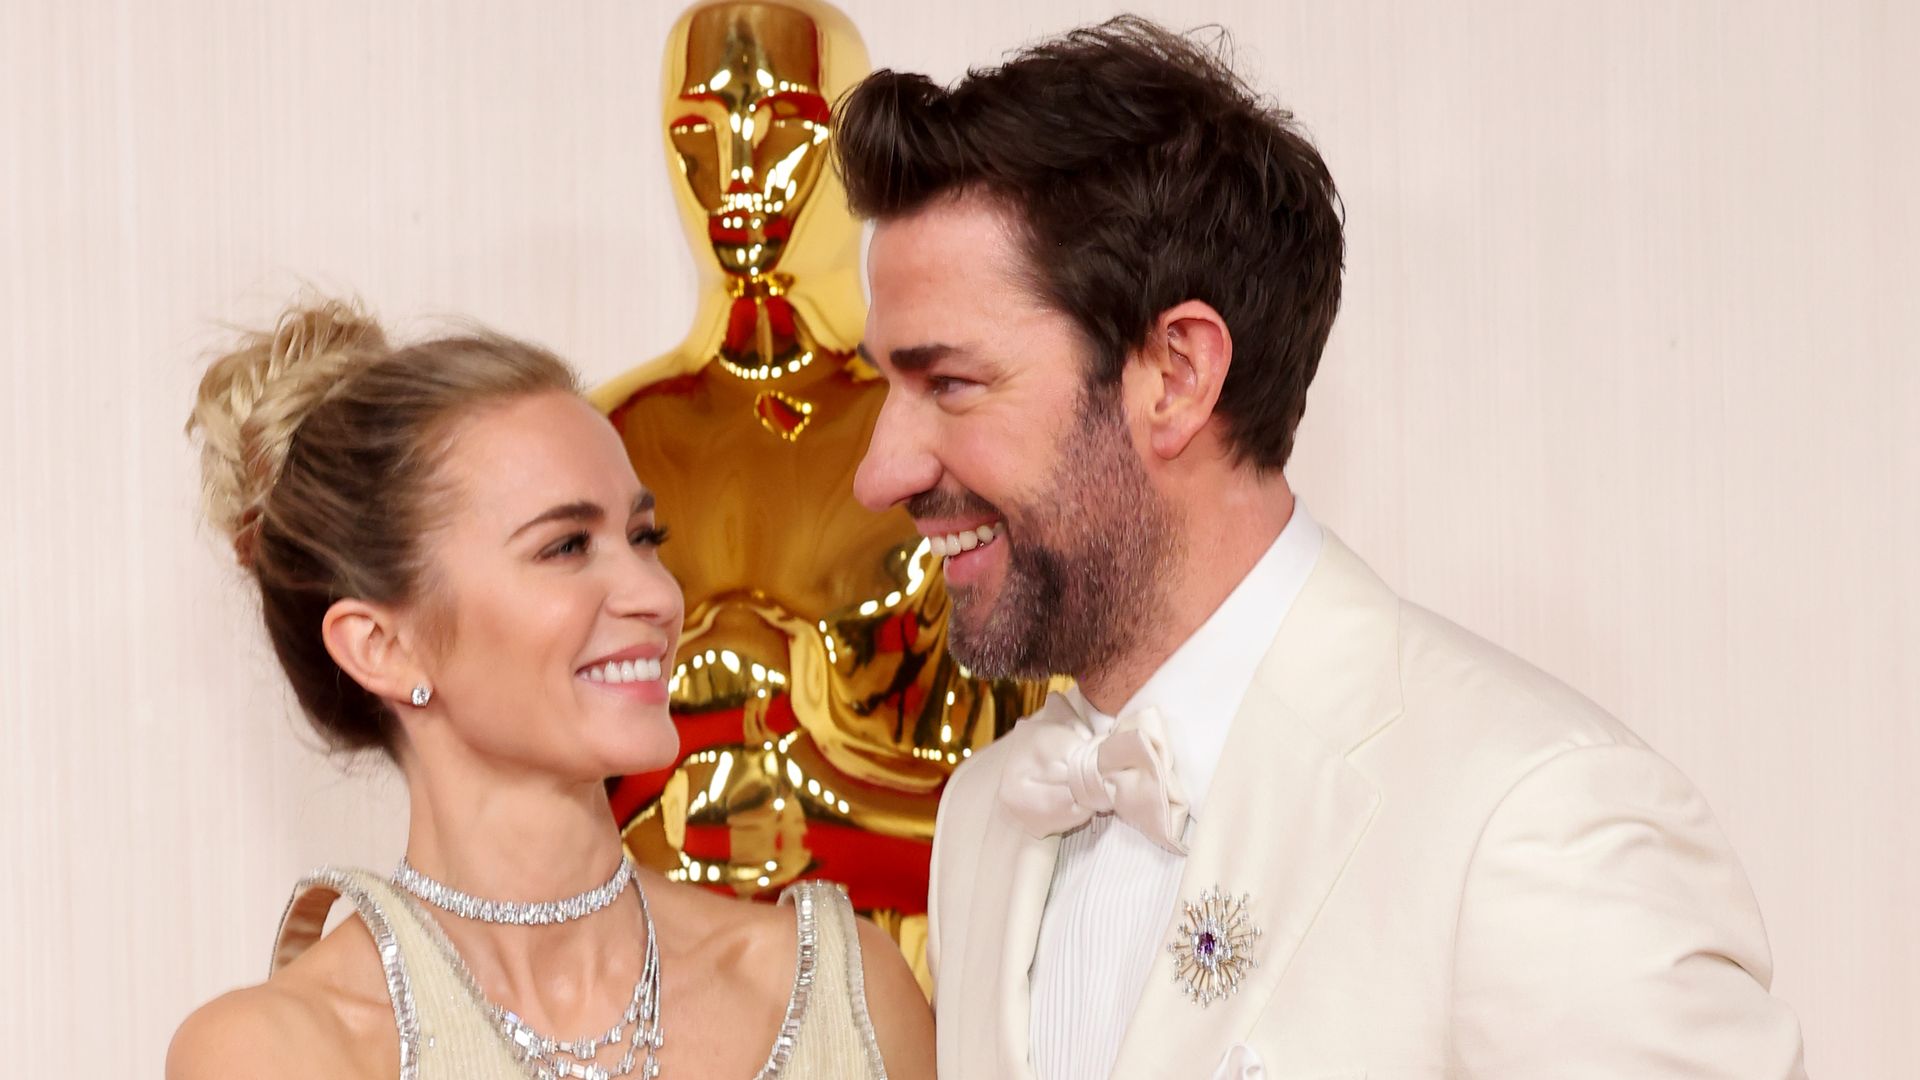 Emily Blunt leaves husband John Krasinski stunned during must-see Oscars red carpet moment